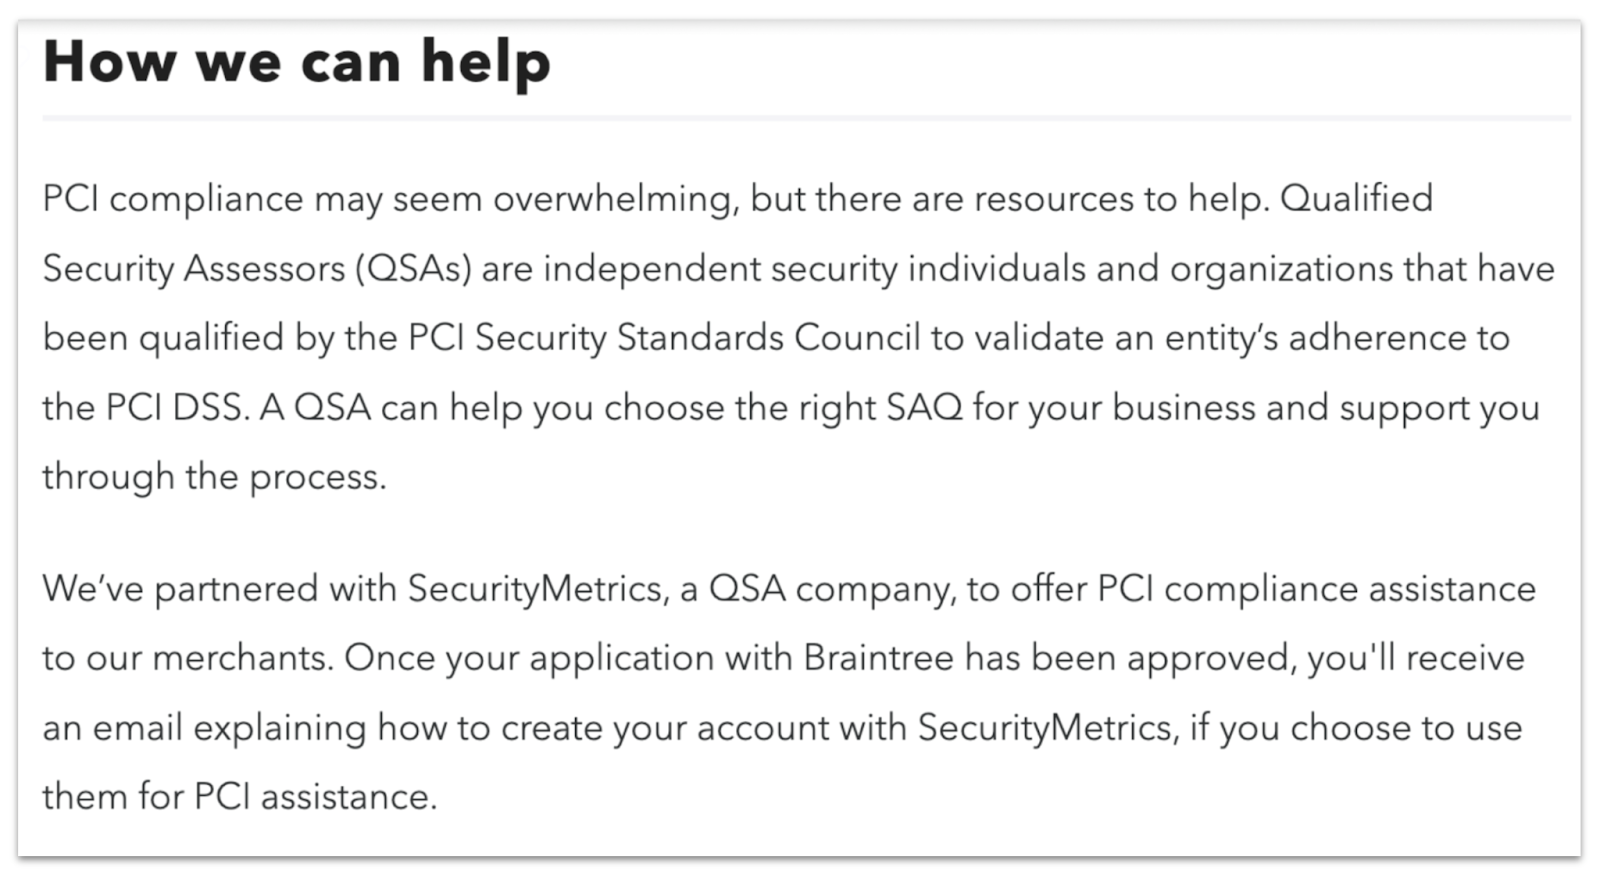 Braintree's partnership with SecurityMetrics